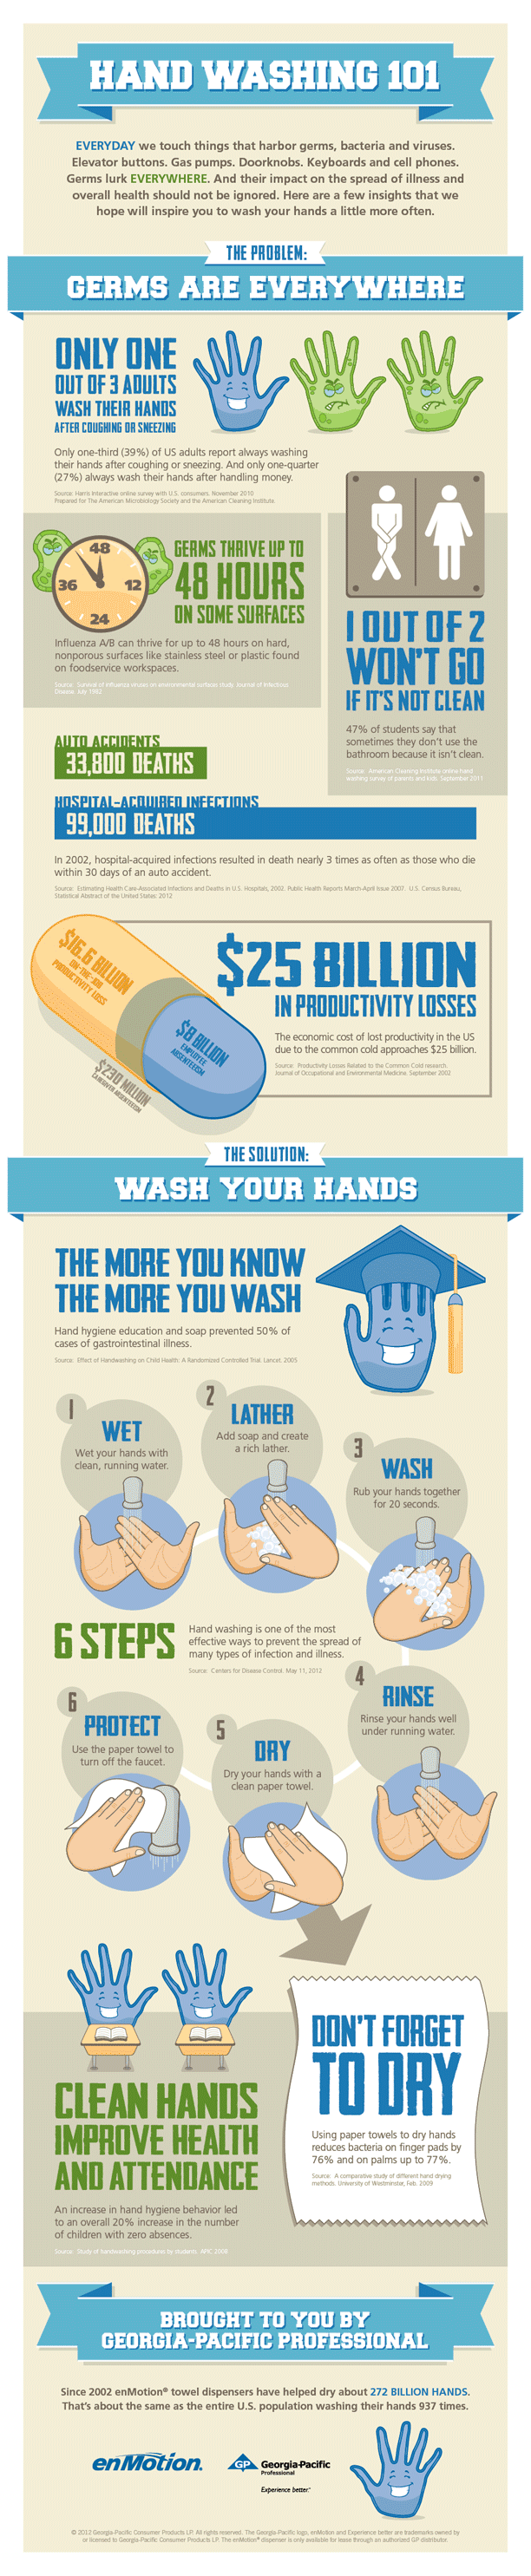 Hand Washing 101 Infographic